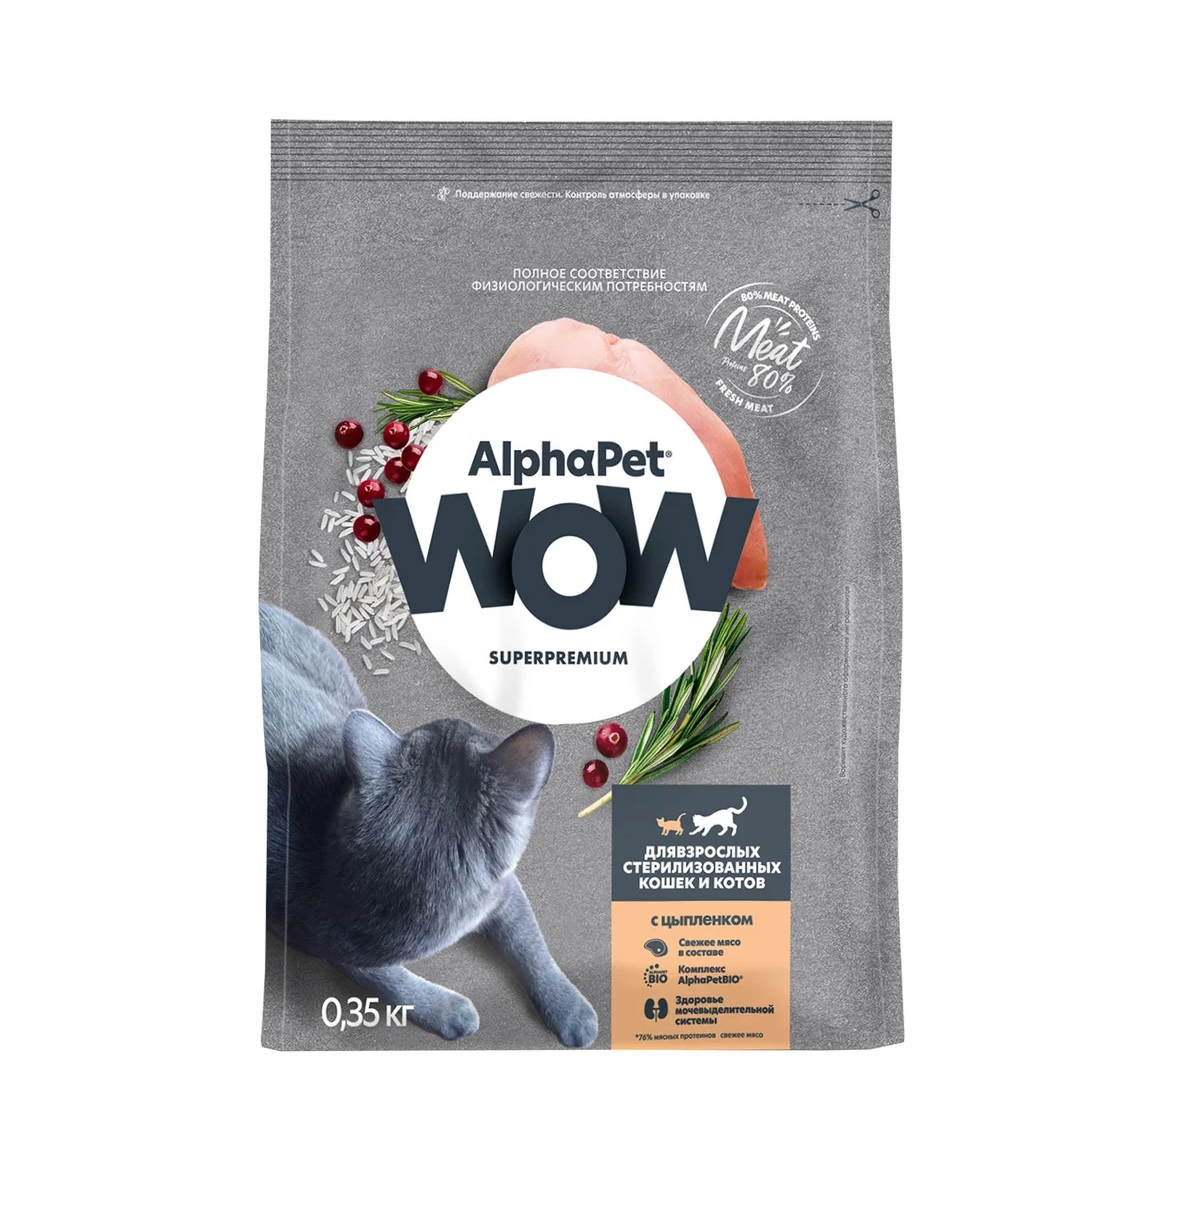 АльфаПет WOW 350гр - для Стерилизованных кошек, Цыпленок (AlphaPet WOW)